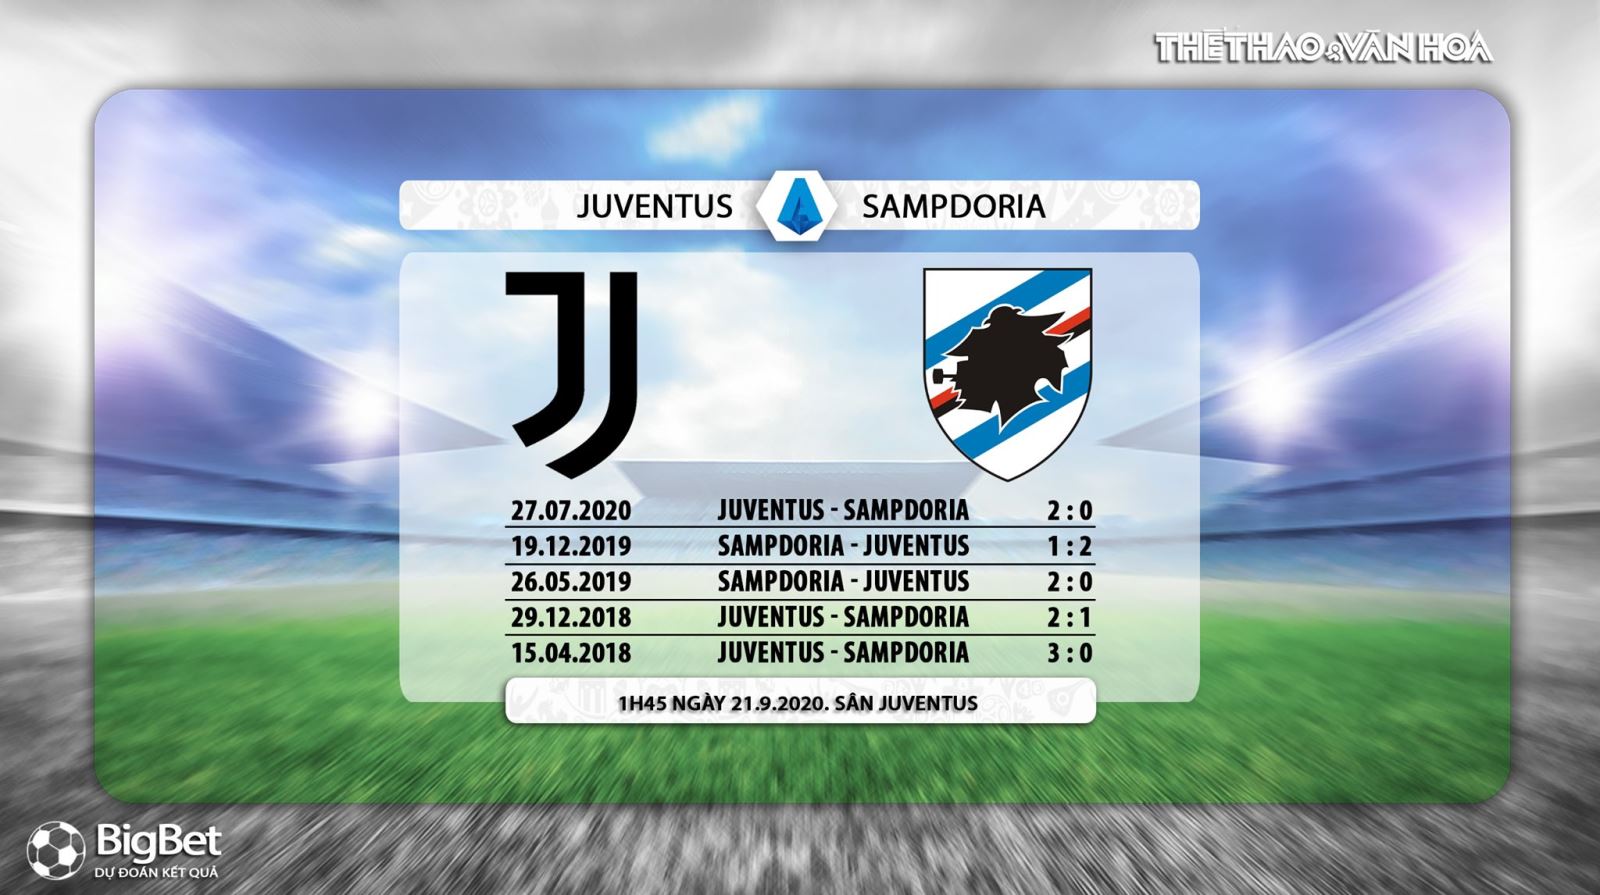 Juventus vs Sampdoria, soi kèo, kèo bóng đá, kèo thơm, kèo Juventus vs Sampdoria, soi kèo Juventus vs Sampdoria, nhận định Juventus vs Sampdoria, dự đoán Juventus vs Sampdoria